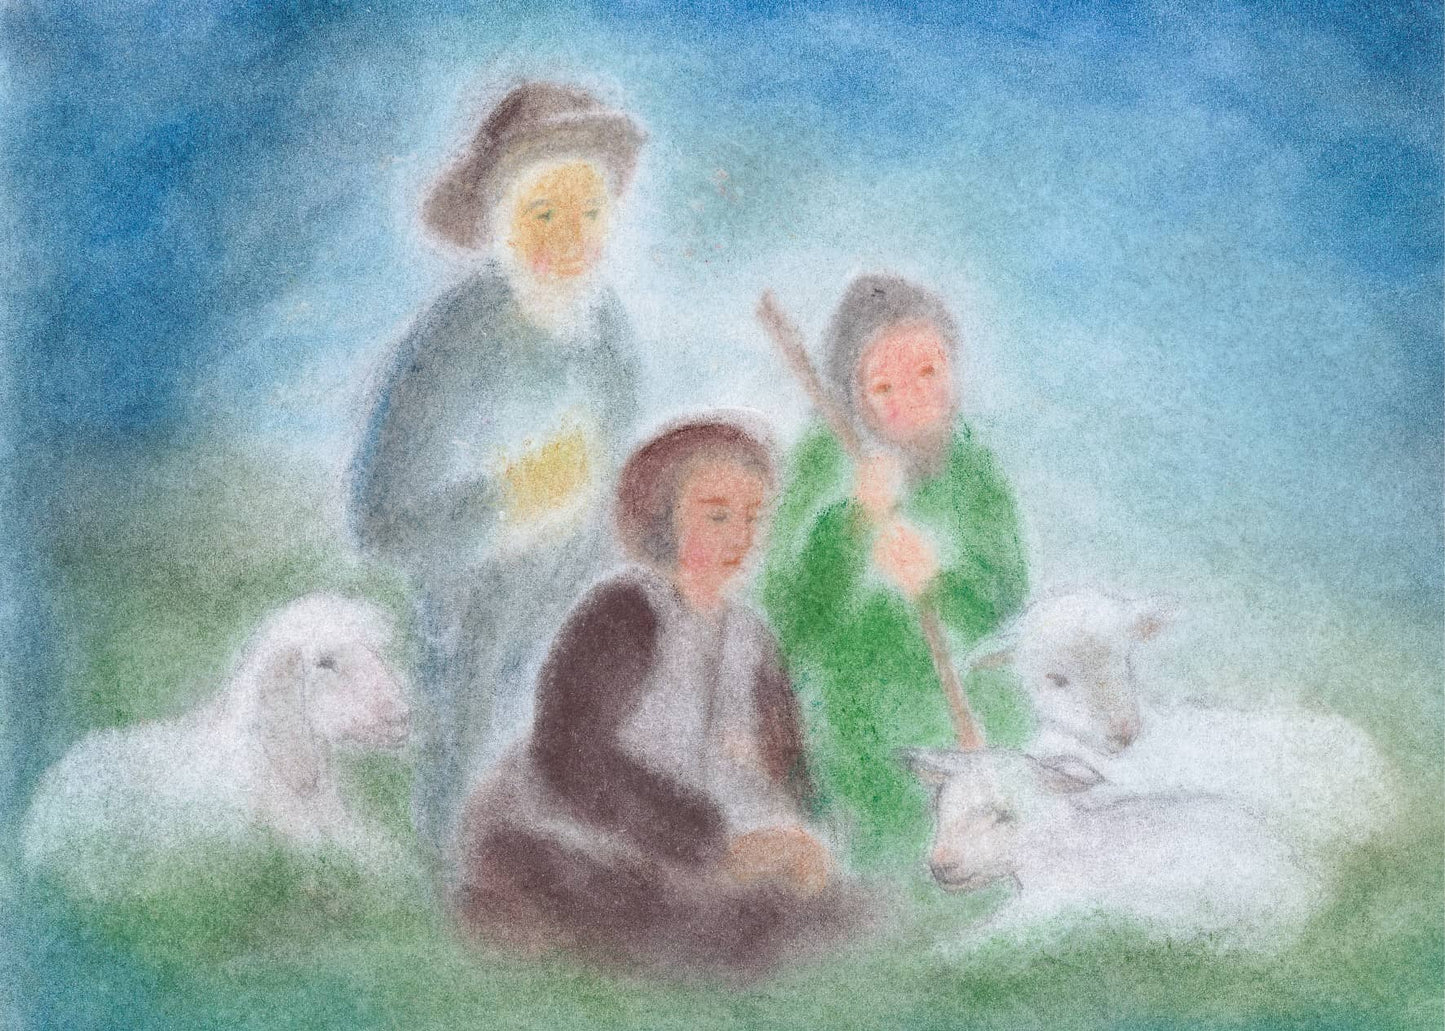 Seccorell-Postkarte "Drei Hirten" mit sanfter Darstellung in Pastelltönen, perfekt für die Adventszeit..